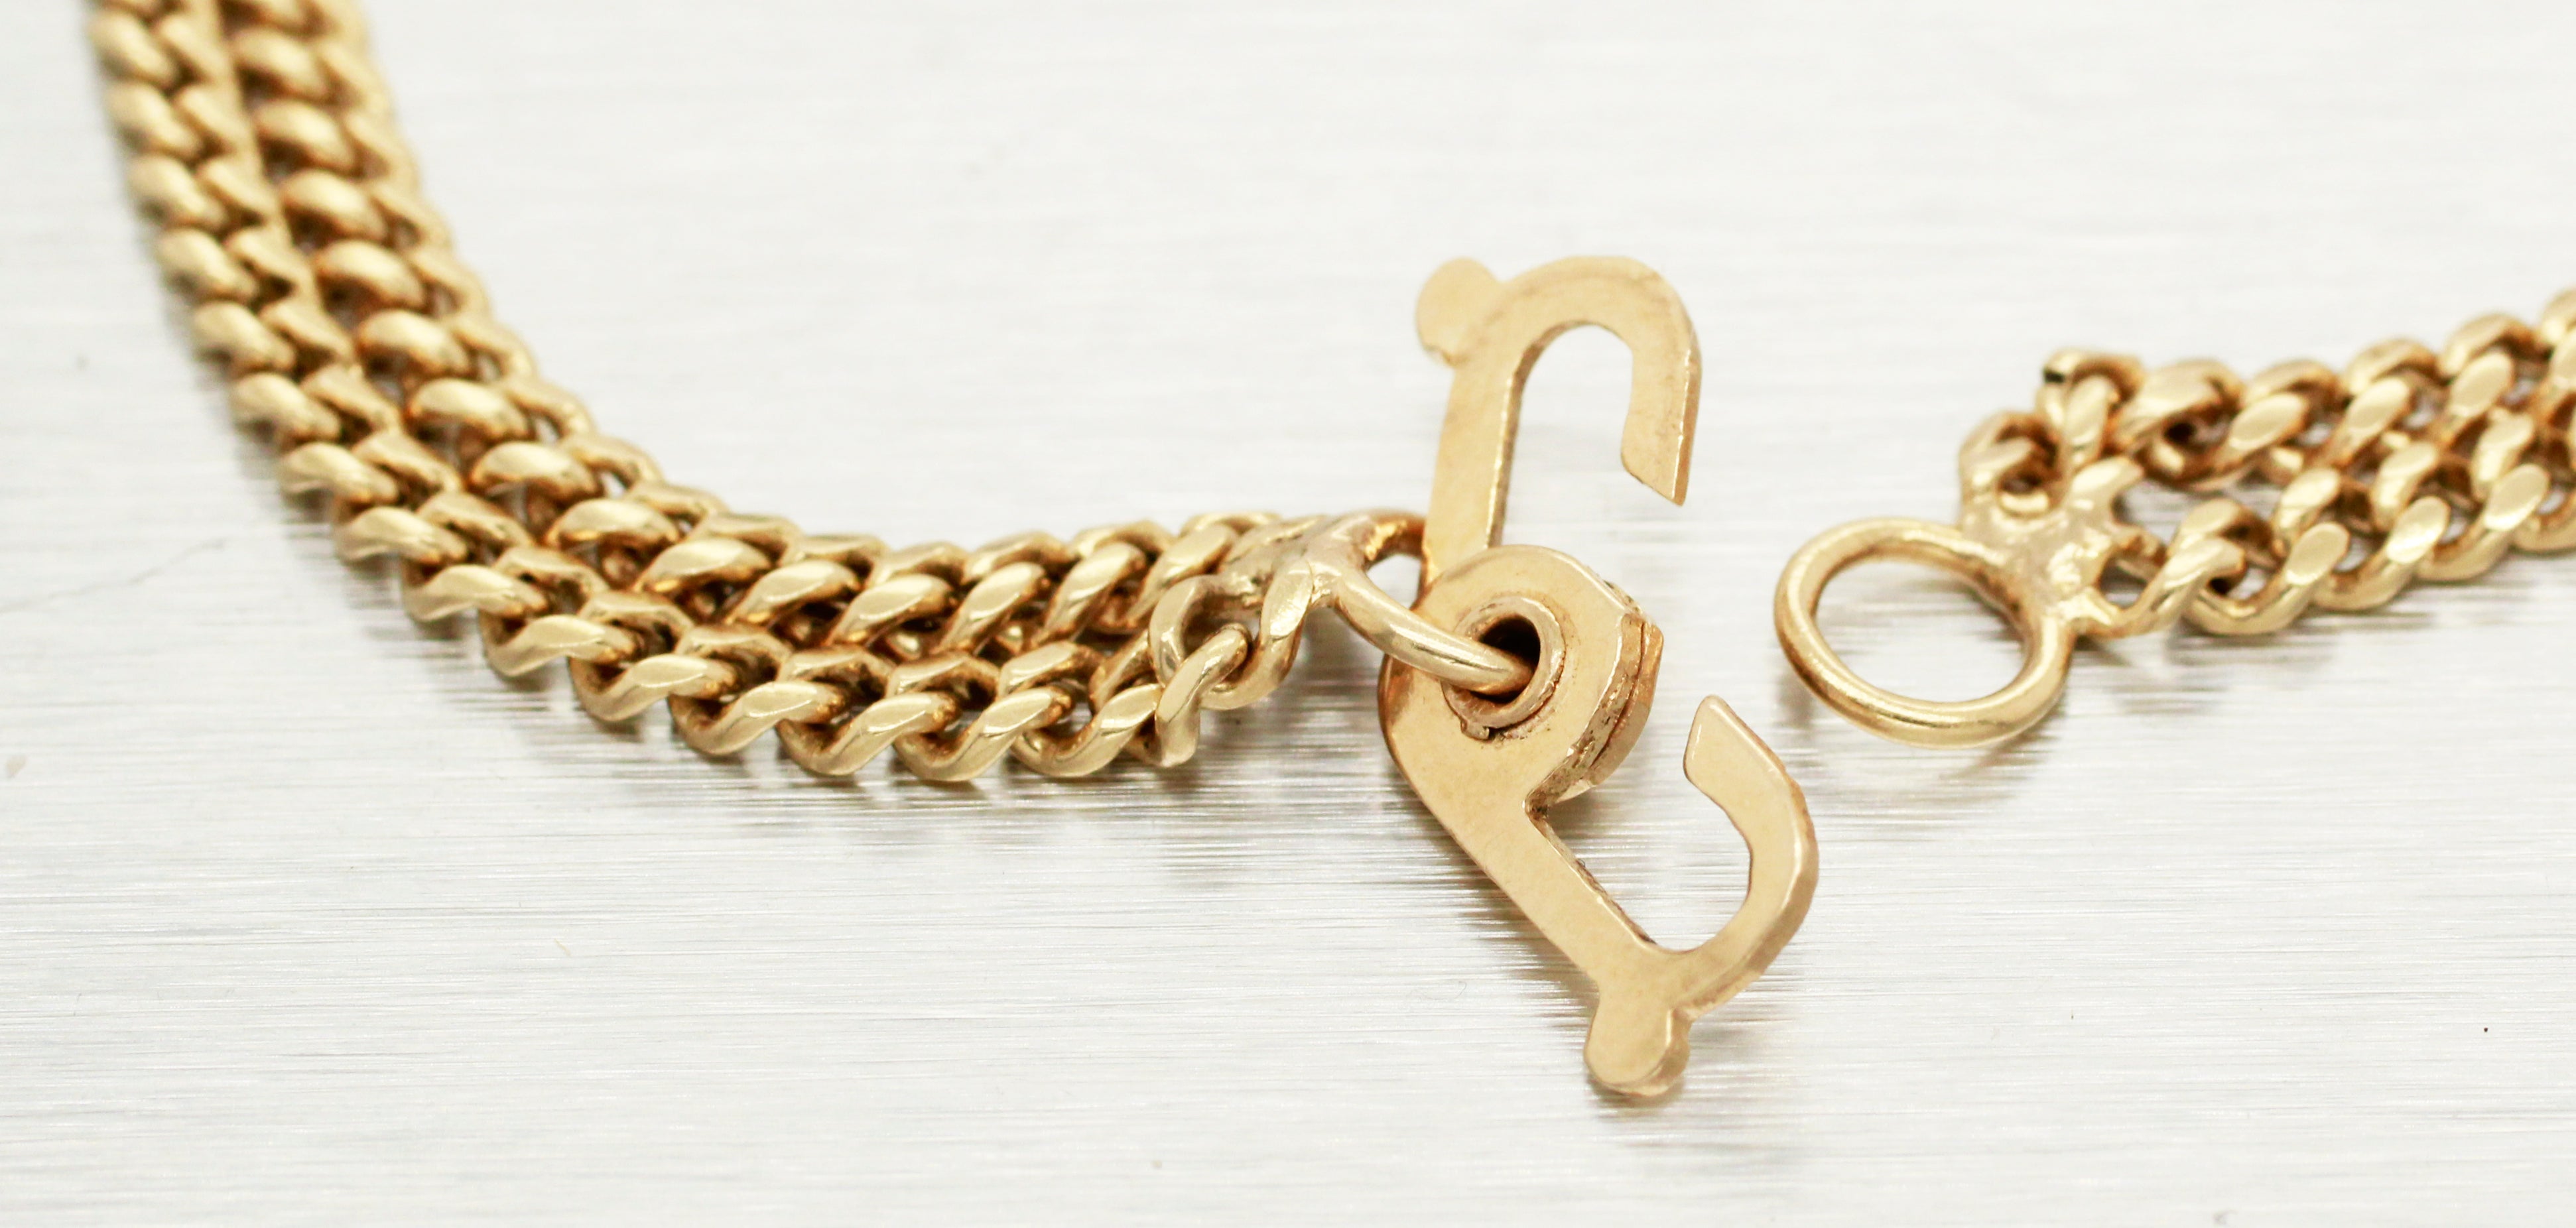 Antique Art Nouveau Floral Statement Chain Bracelet - 14k Yellow Gold - 8.75"